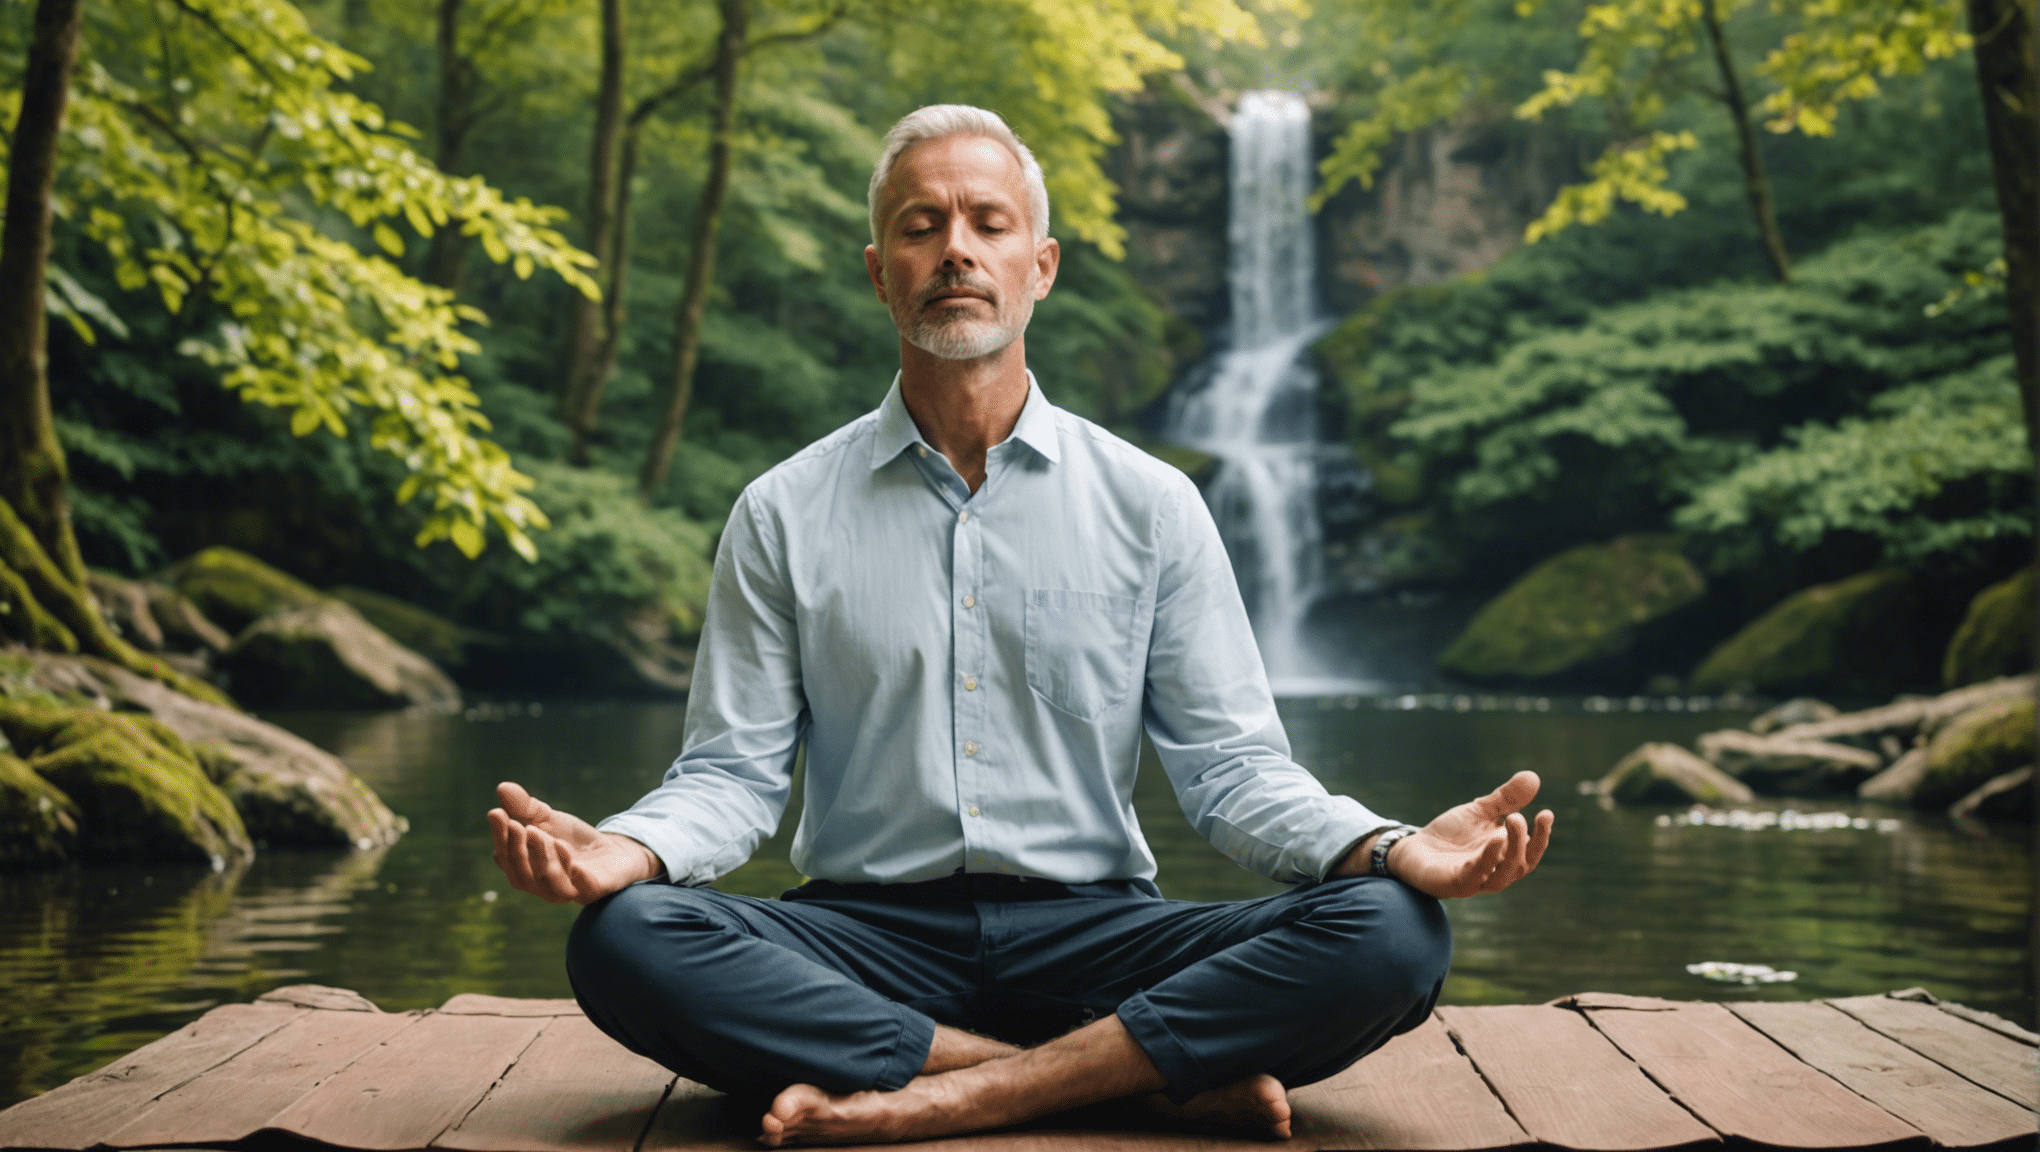 découvrez le pouvoir transformateur des méditations guidées pour améliorer votre santé mentale et trouver un équilibre intérieur.